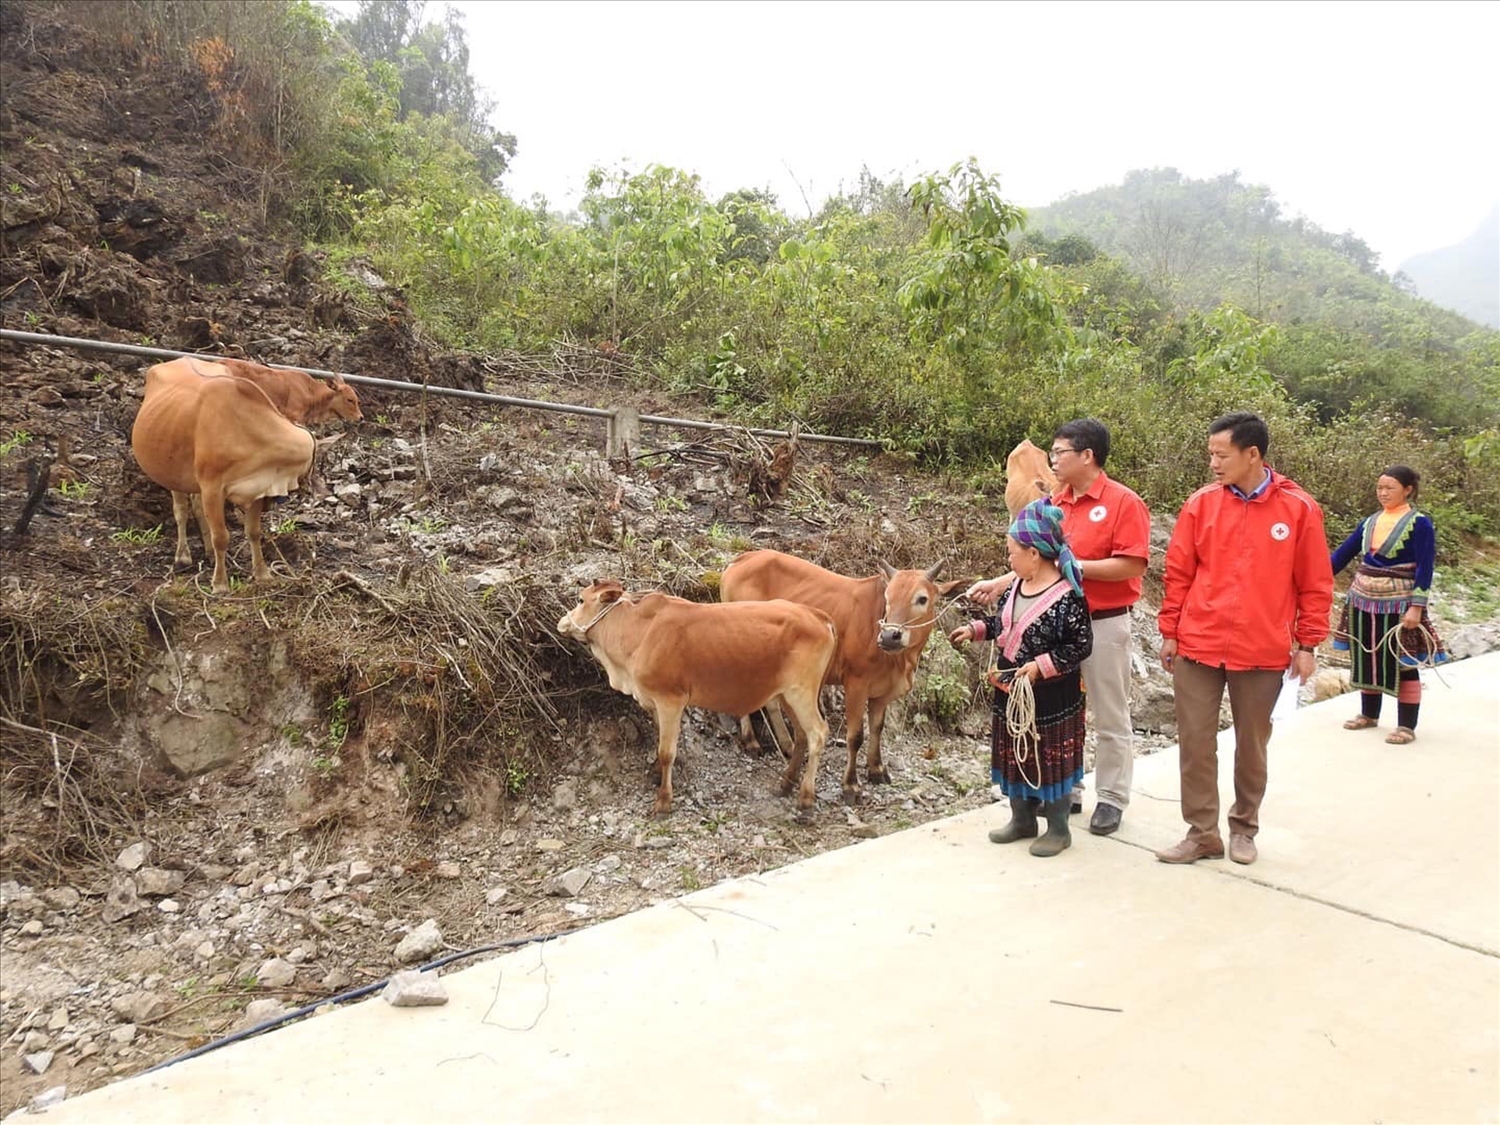 Cán bộ Hội chữ thập đỏ huyện Sìn Hồ kiểm tra sinh trưởng và phát triển của đàn bò dự án ở xã Tủa Sín Chải